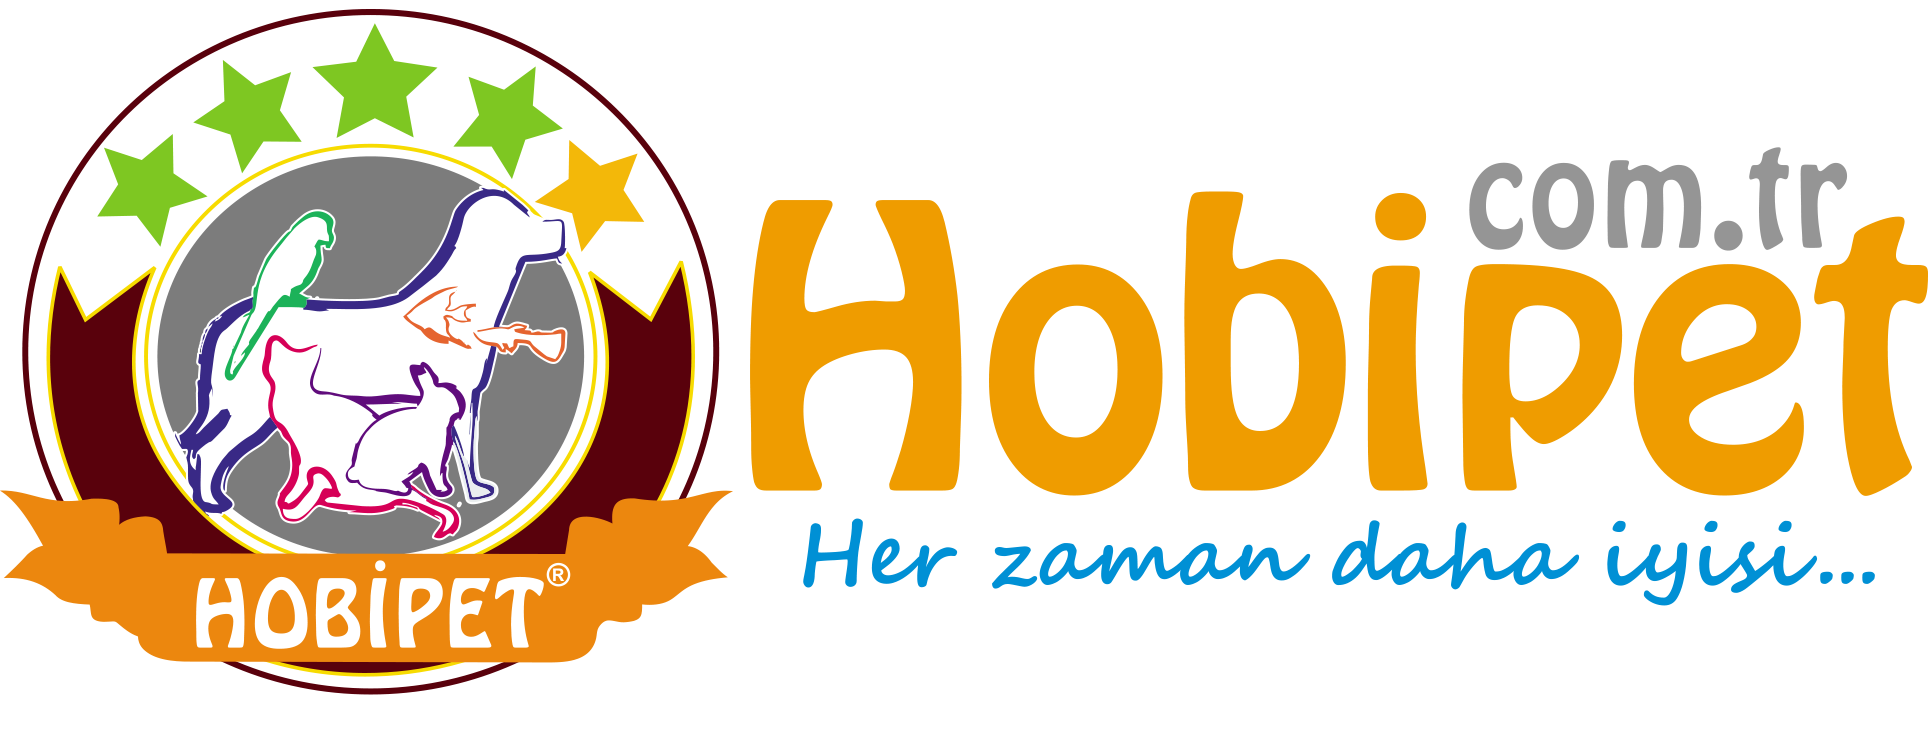 hobipet logo vectorel.png (201 KB)